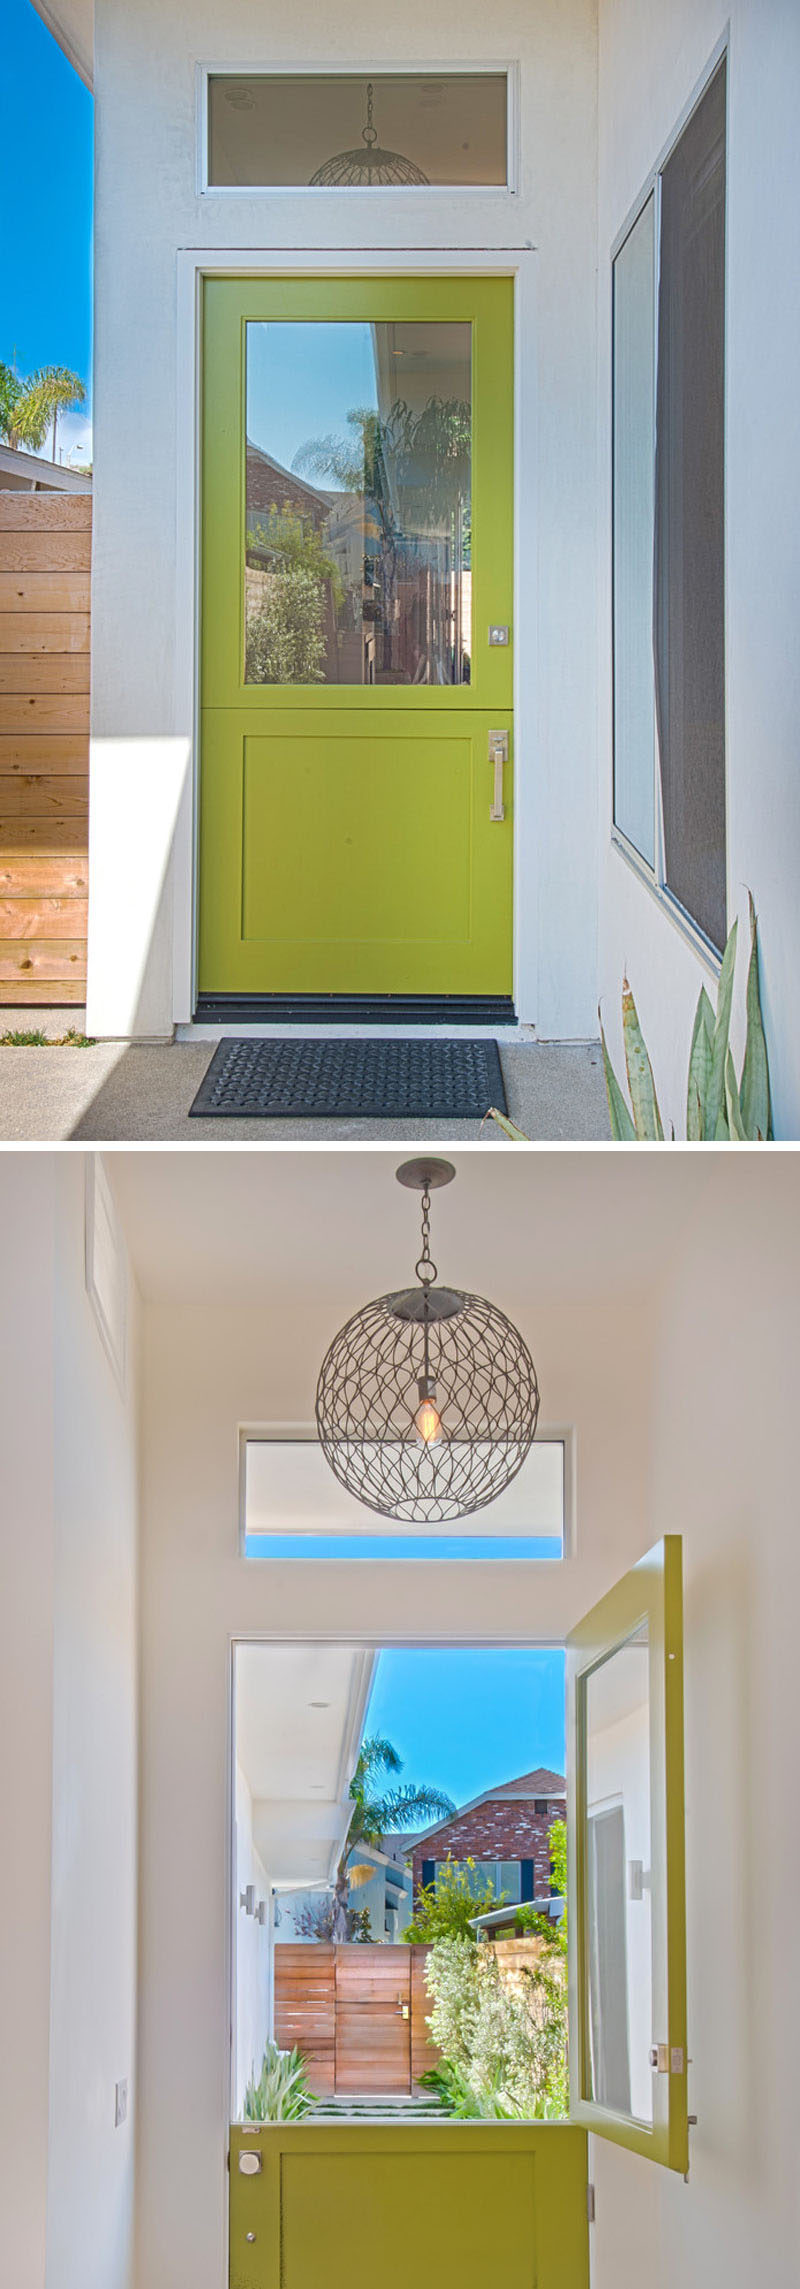 Идеи дизайна дверей - 9 примеров современных голландских дверей // Ярко-зеленая голландская дверь встречает людей, когда они приходят, и украшает вход в этот современный дом.